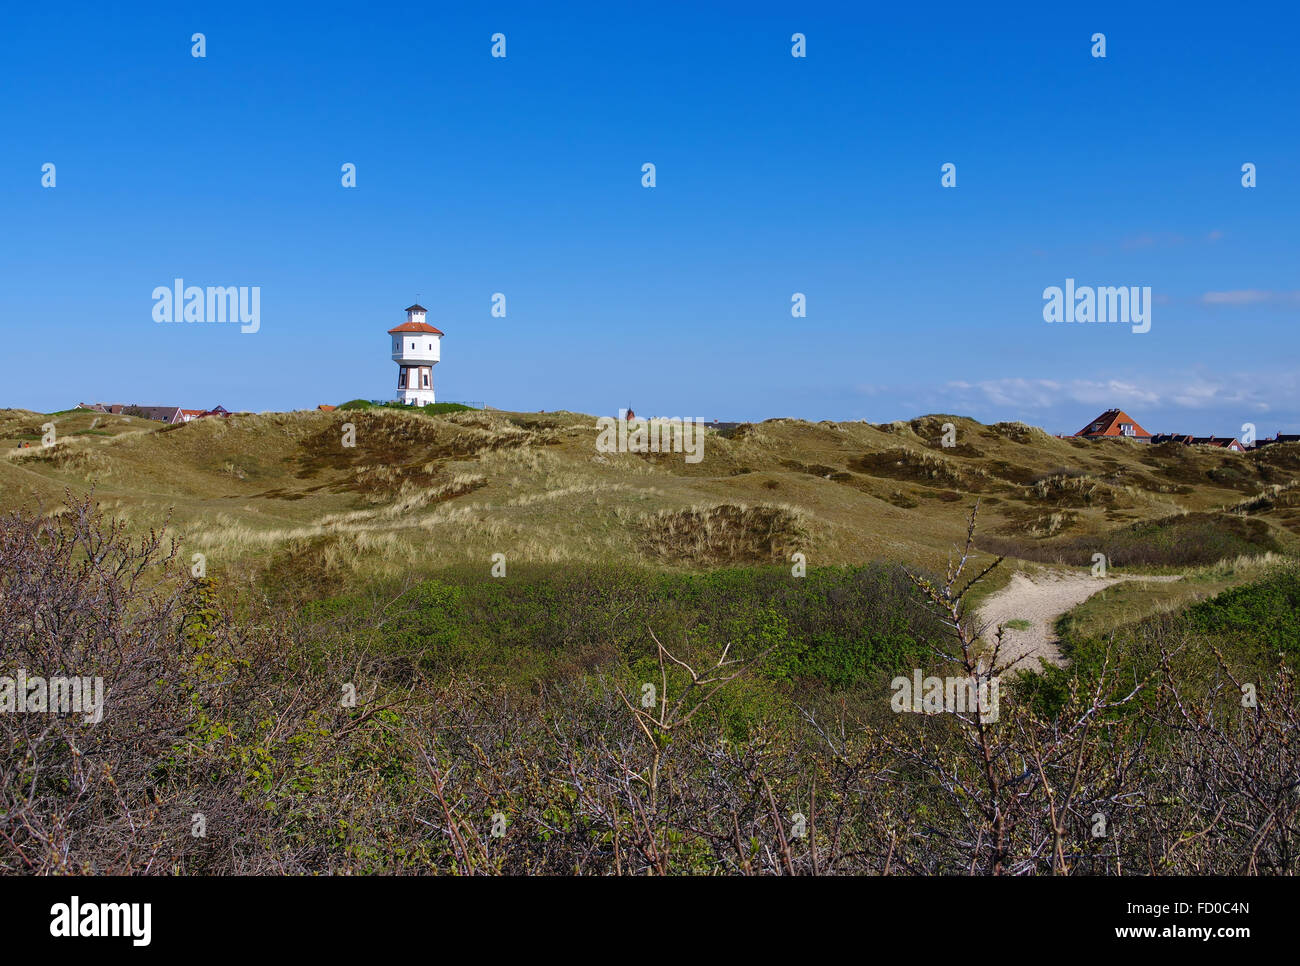 Insel Langeoog, der Wasserturm - die deutsche Insel Langeoog in der Nordsee, der Wasserturm Stockfoto